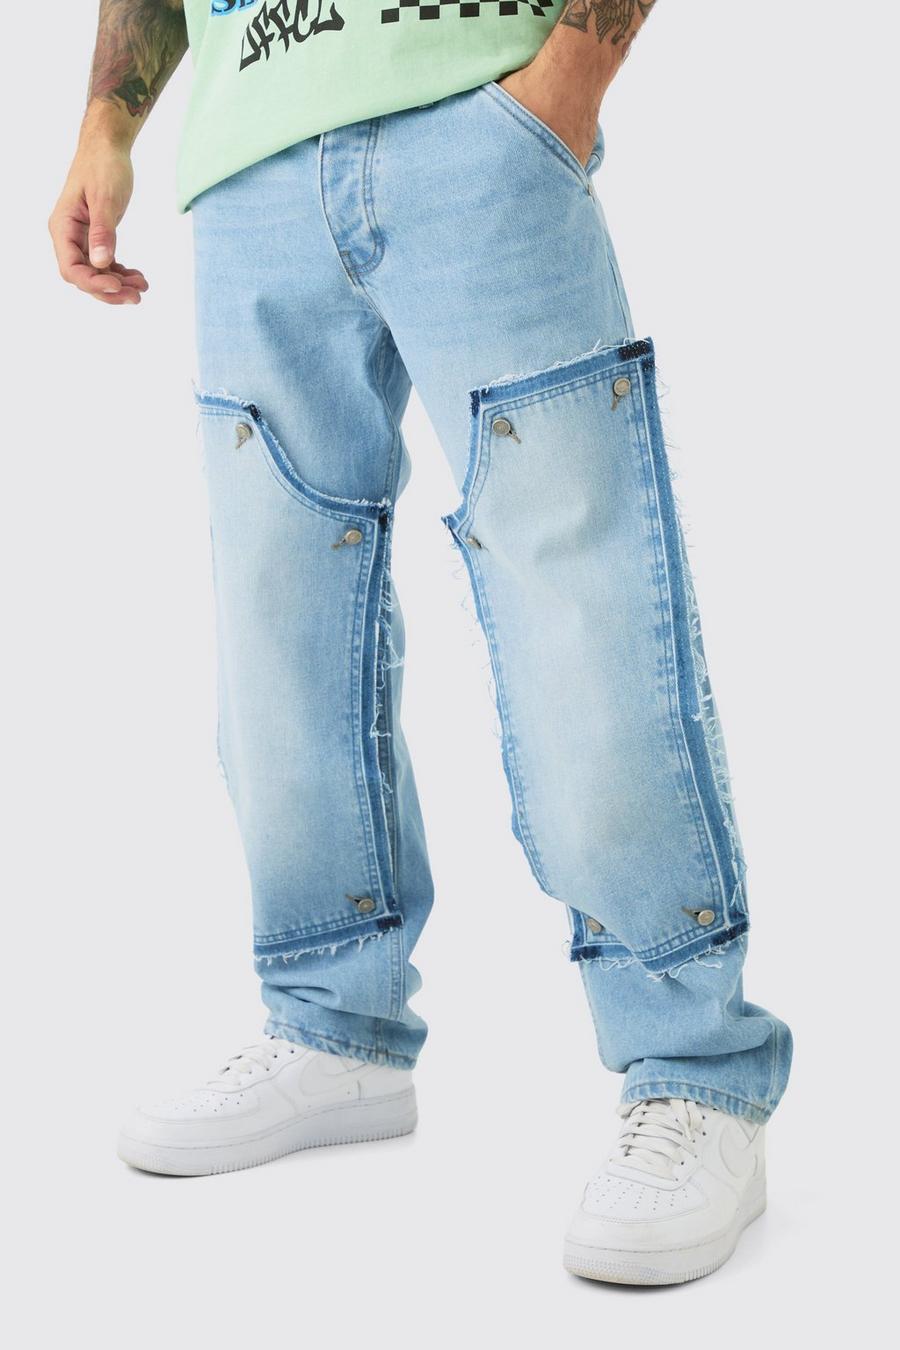 Lockere Jeans in Hellblau, Light blue